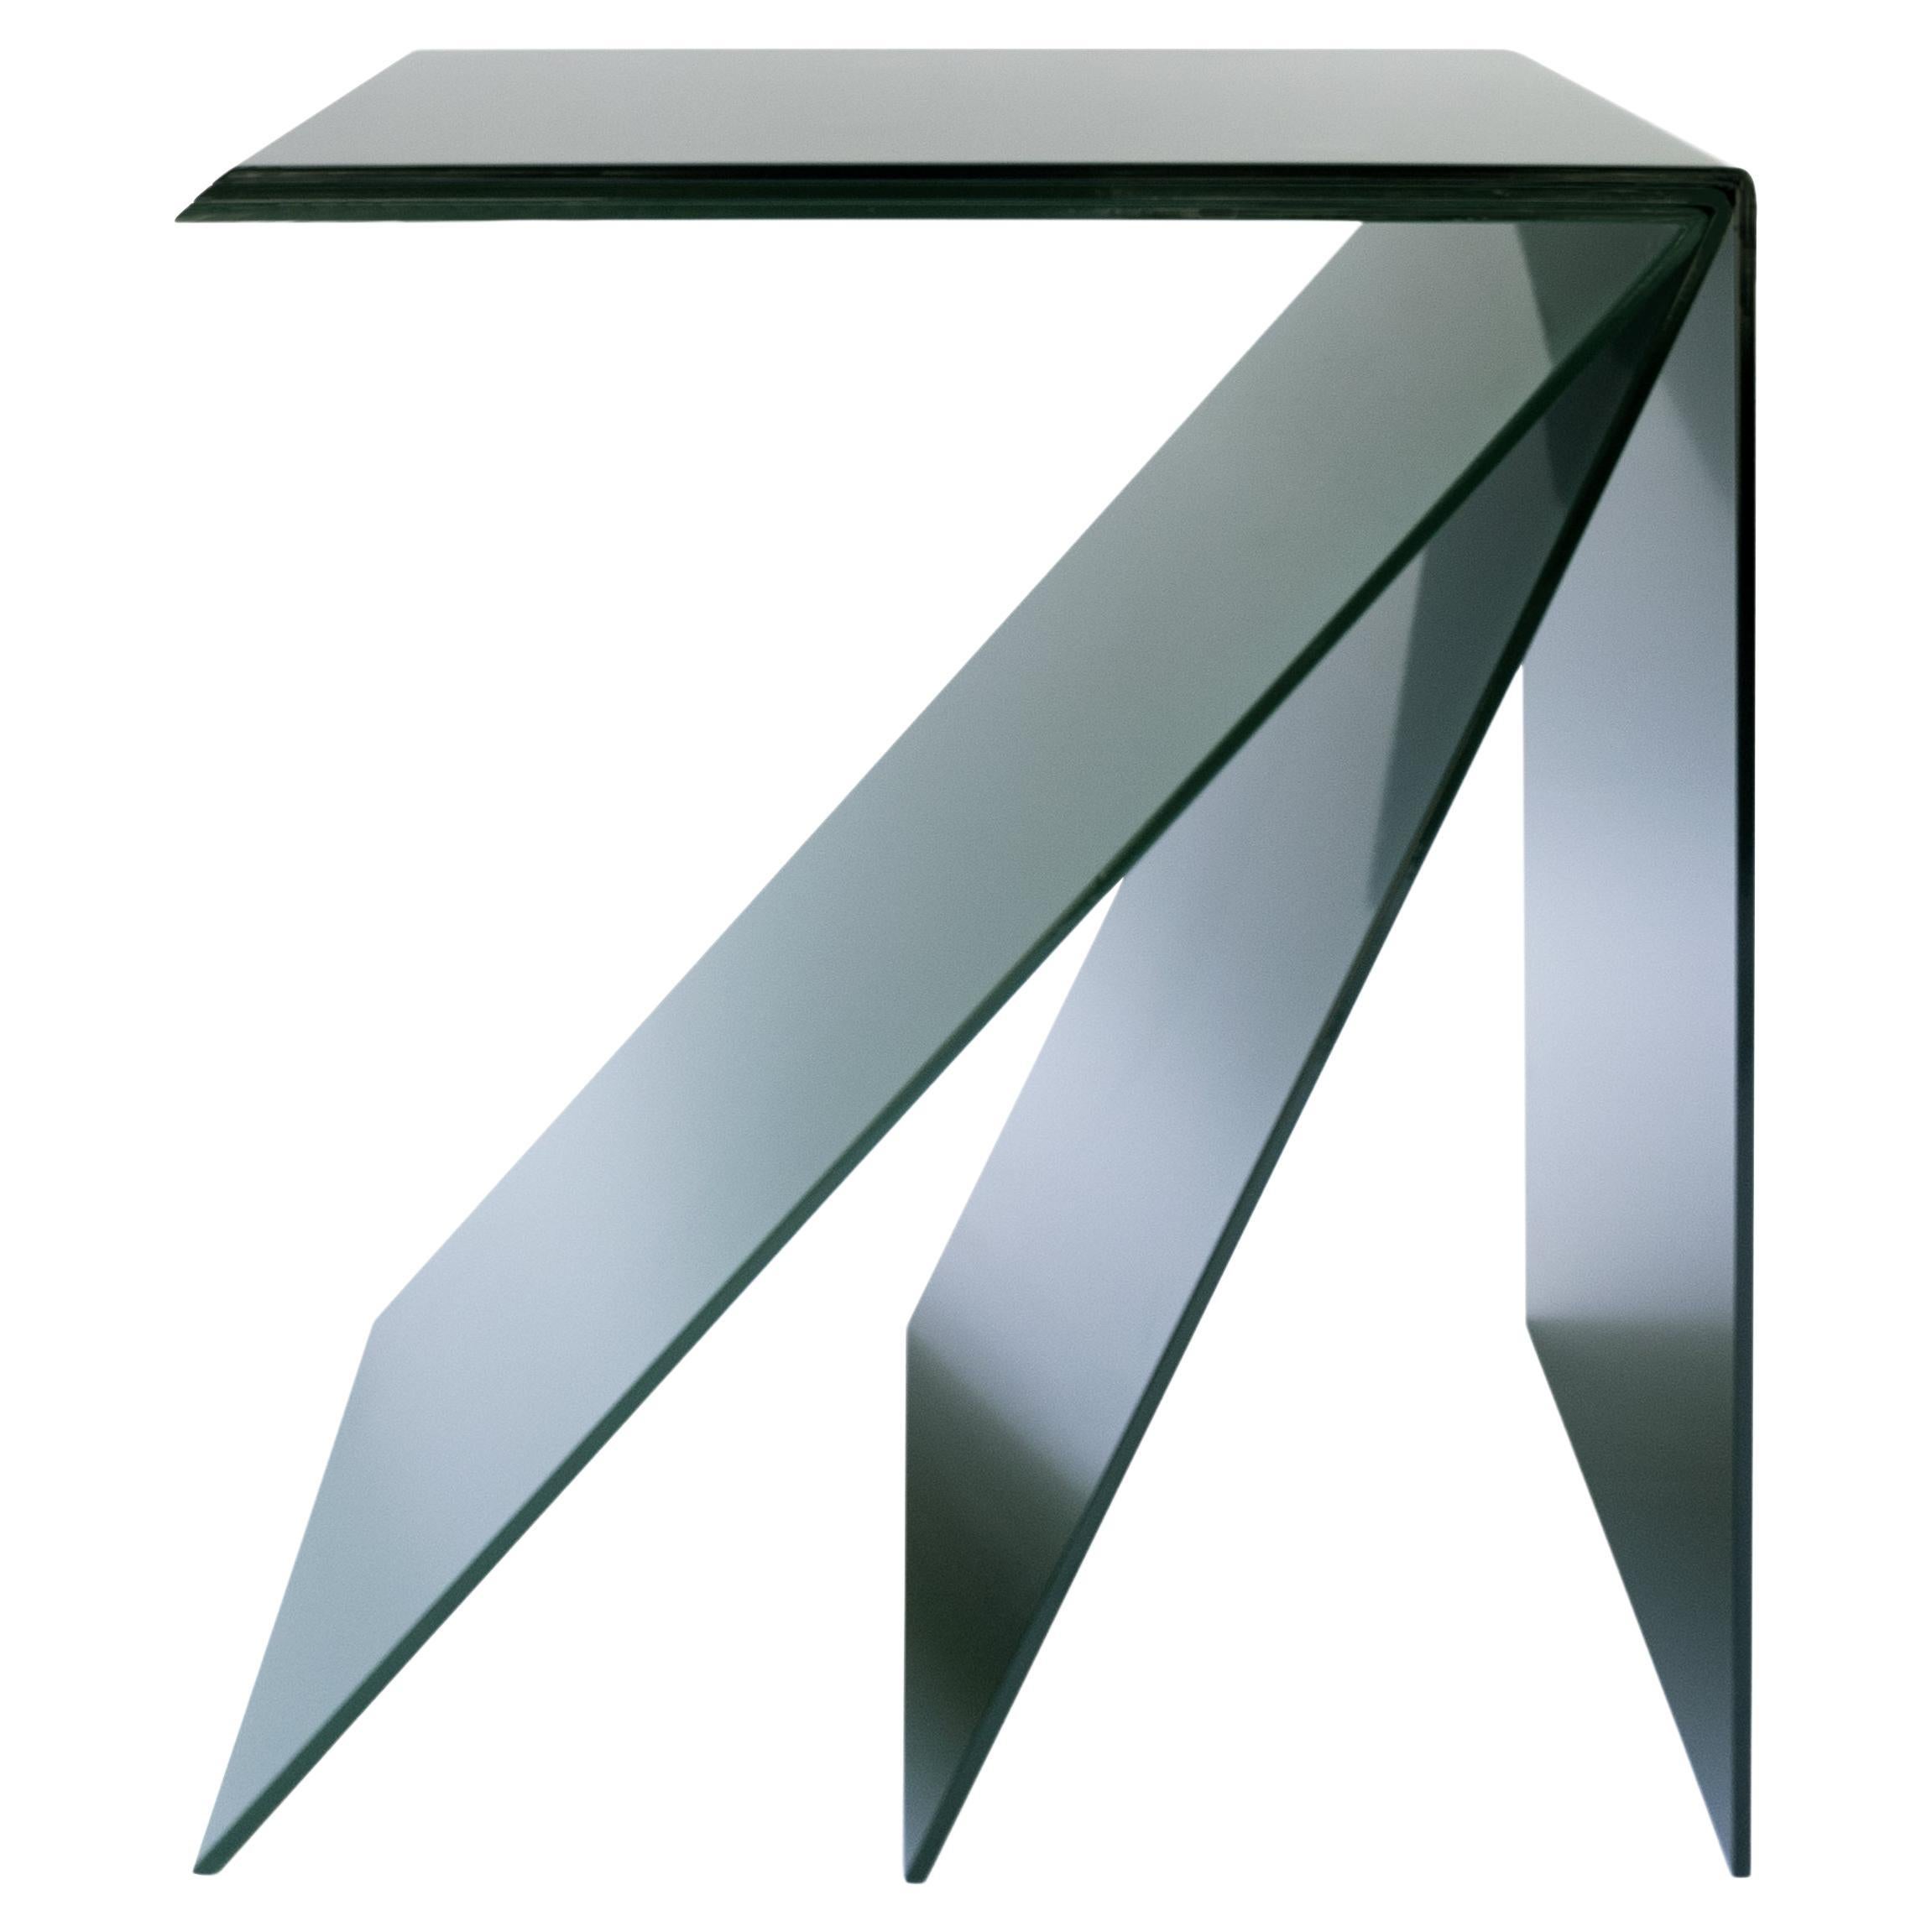 ZA est une table d'appoint sculpturale en métal à plusieurs couches, dans des nuances de vert et un revêtement en poudre noir. Le plateau et le dos de la table sont noirs. Les deux couches intermédiaires sont deux nuances de vert.
Options de couleur